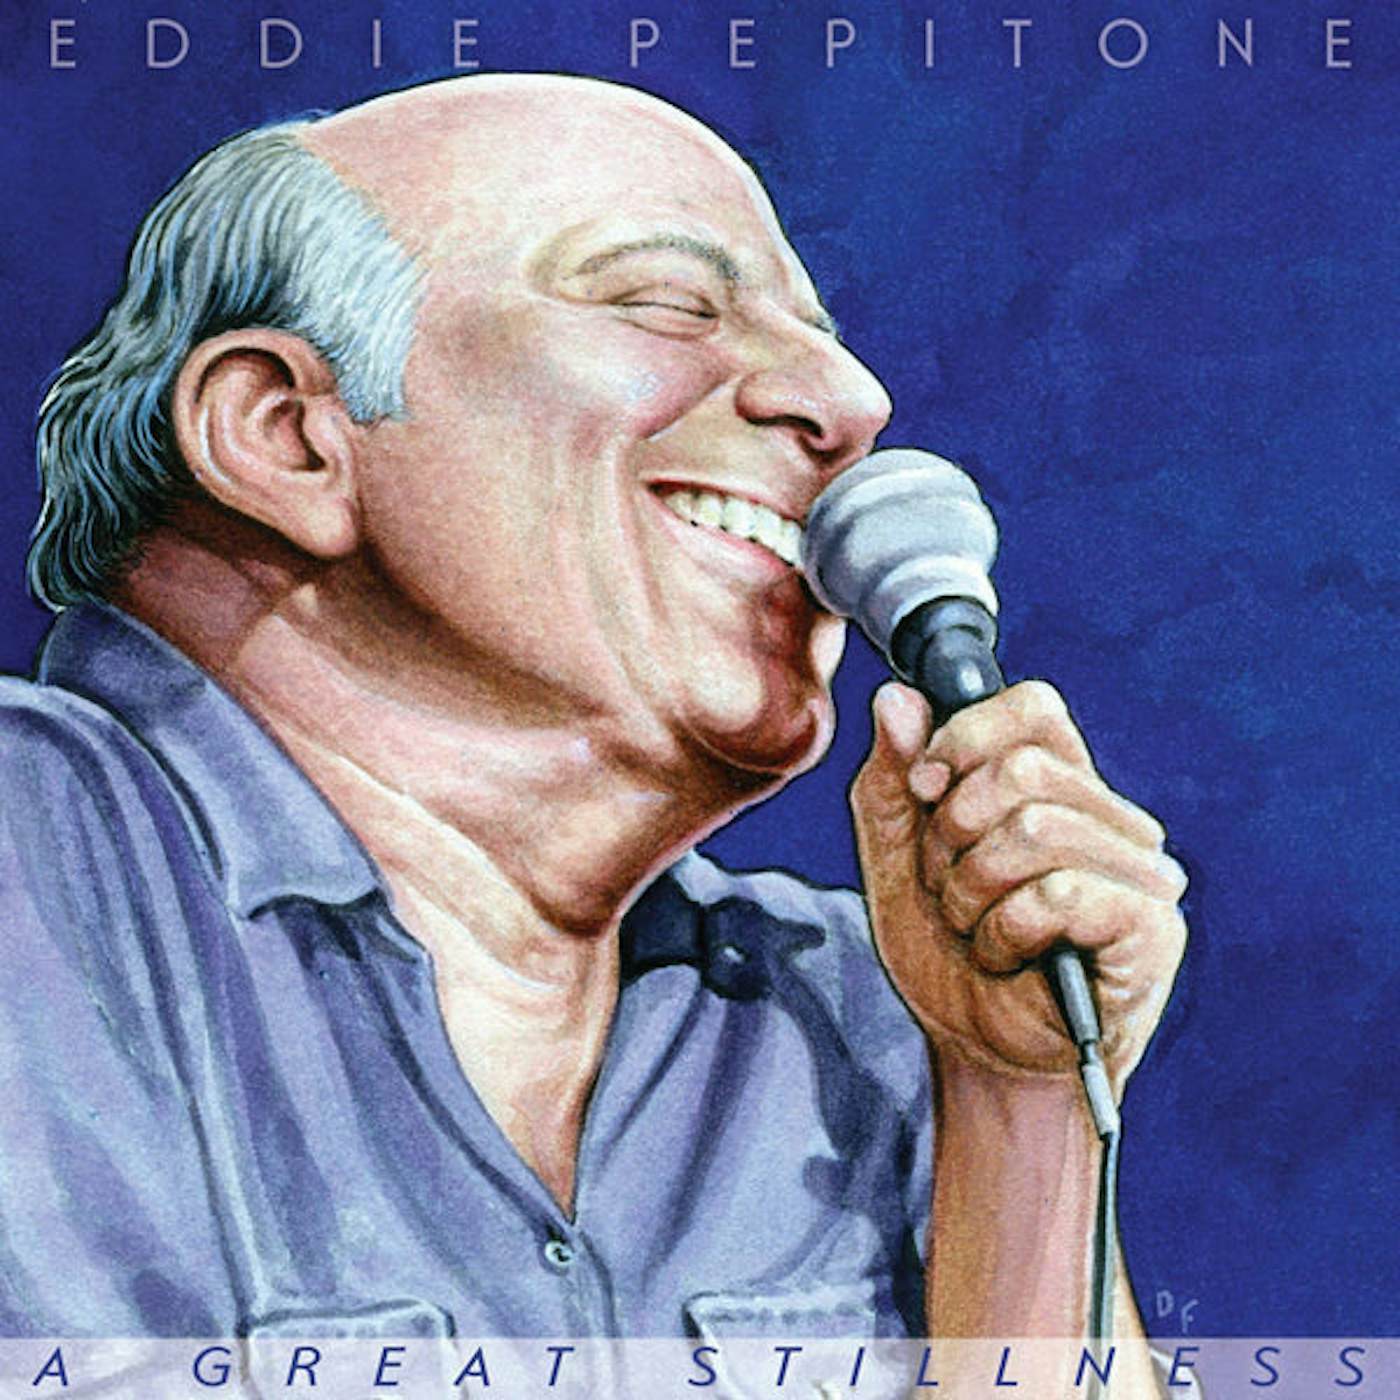 Eddie Pepitone LP - A Great Stillness (Vinyl)